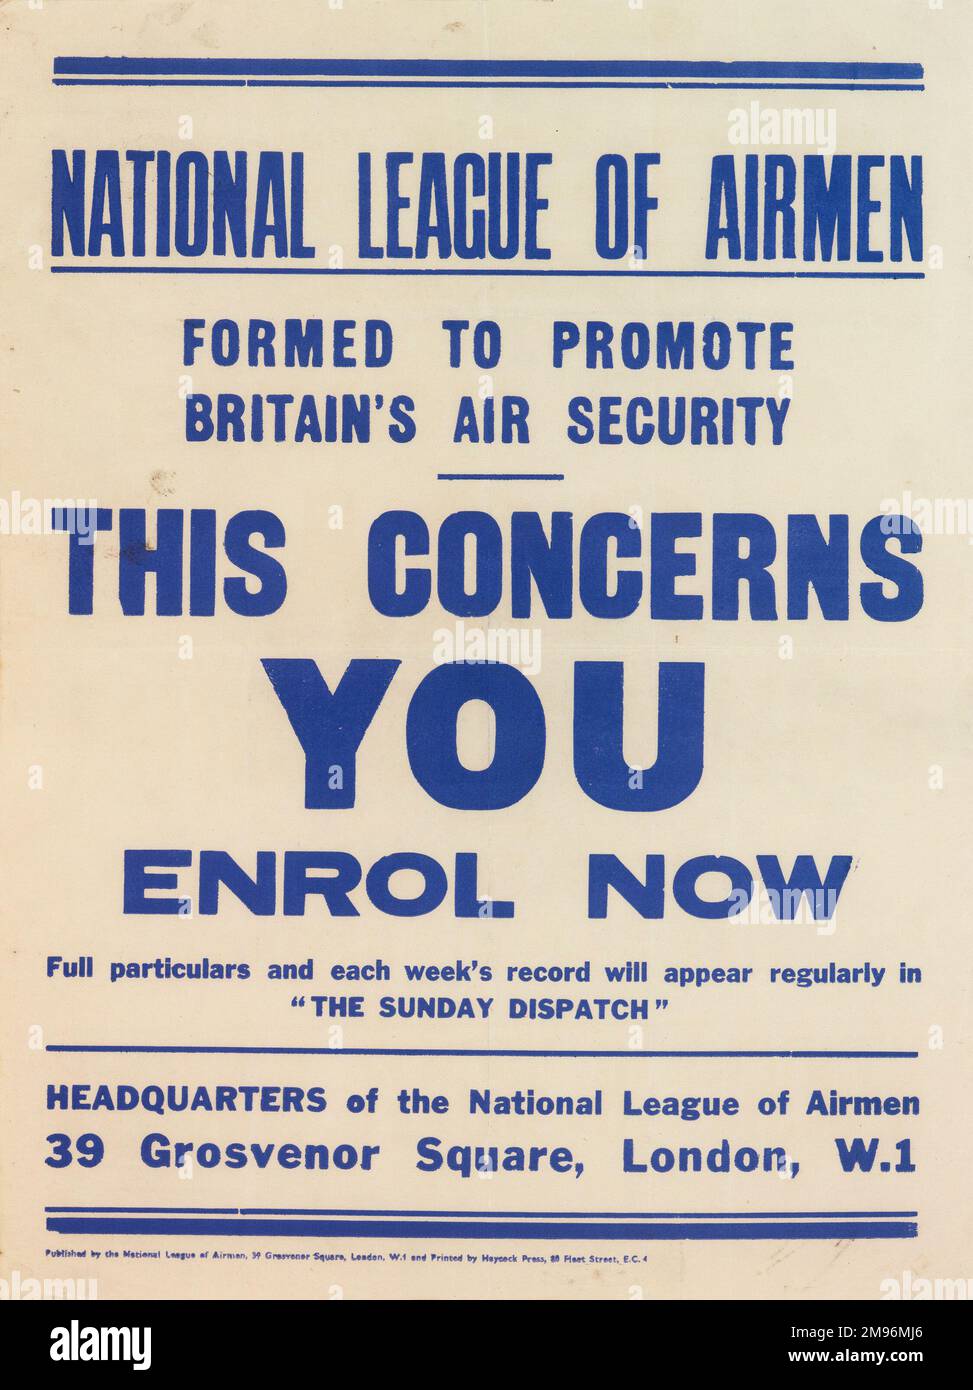 Poster, National League of Airmen, gegründet, um die Luftsicherheit Großbritanniens zu fördern. Das Betrifft Sie, Melden Sie Sich Jetzt An. Stockfoto